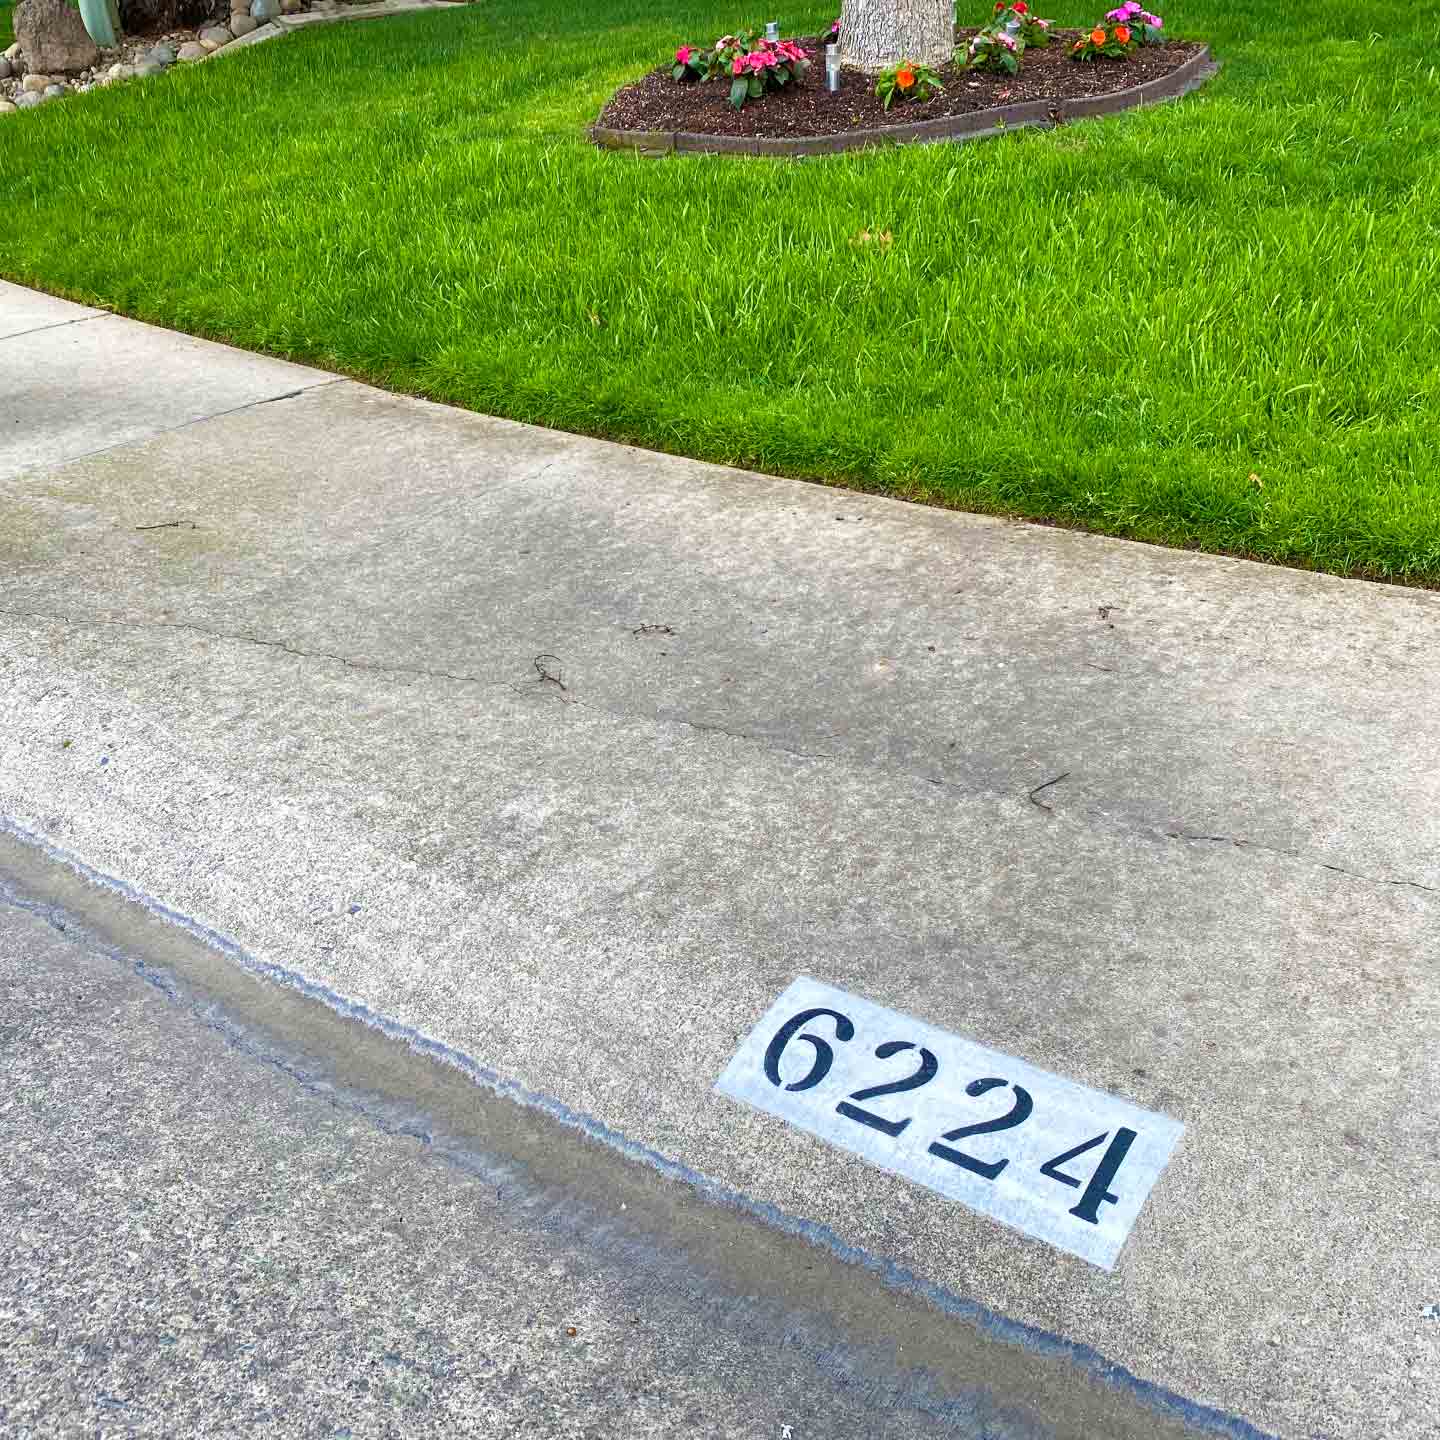 Painted Curb Numbers on Sidewalk